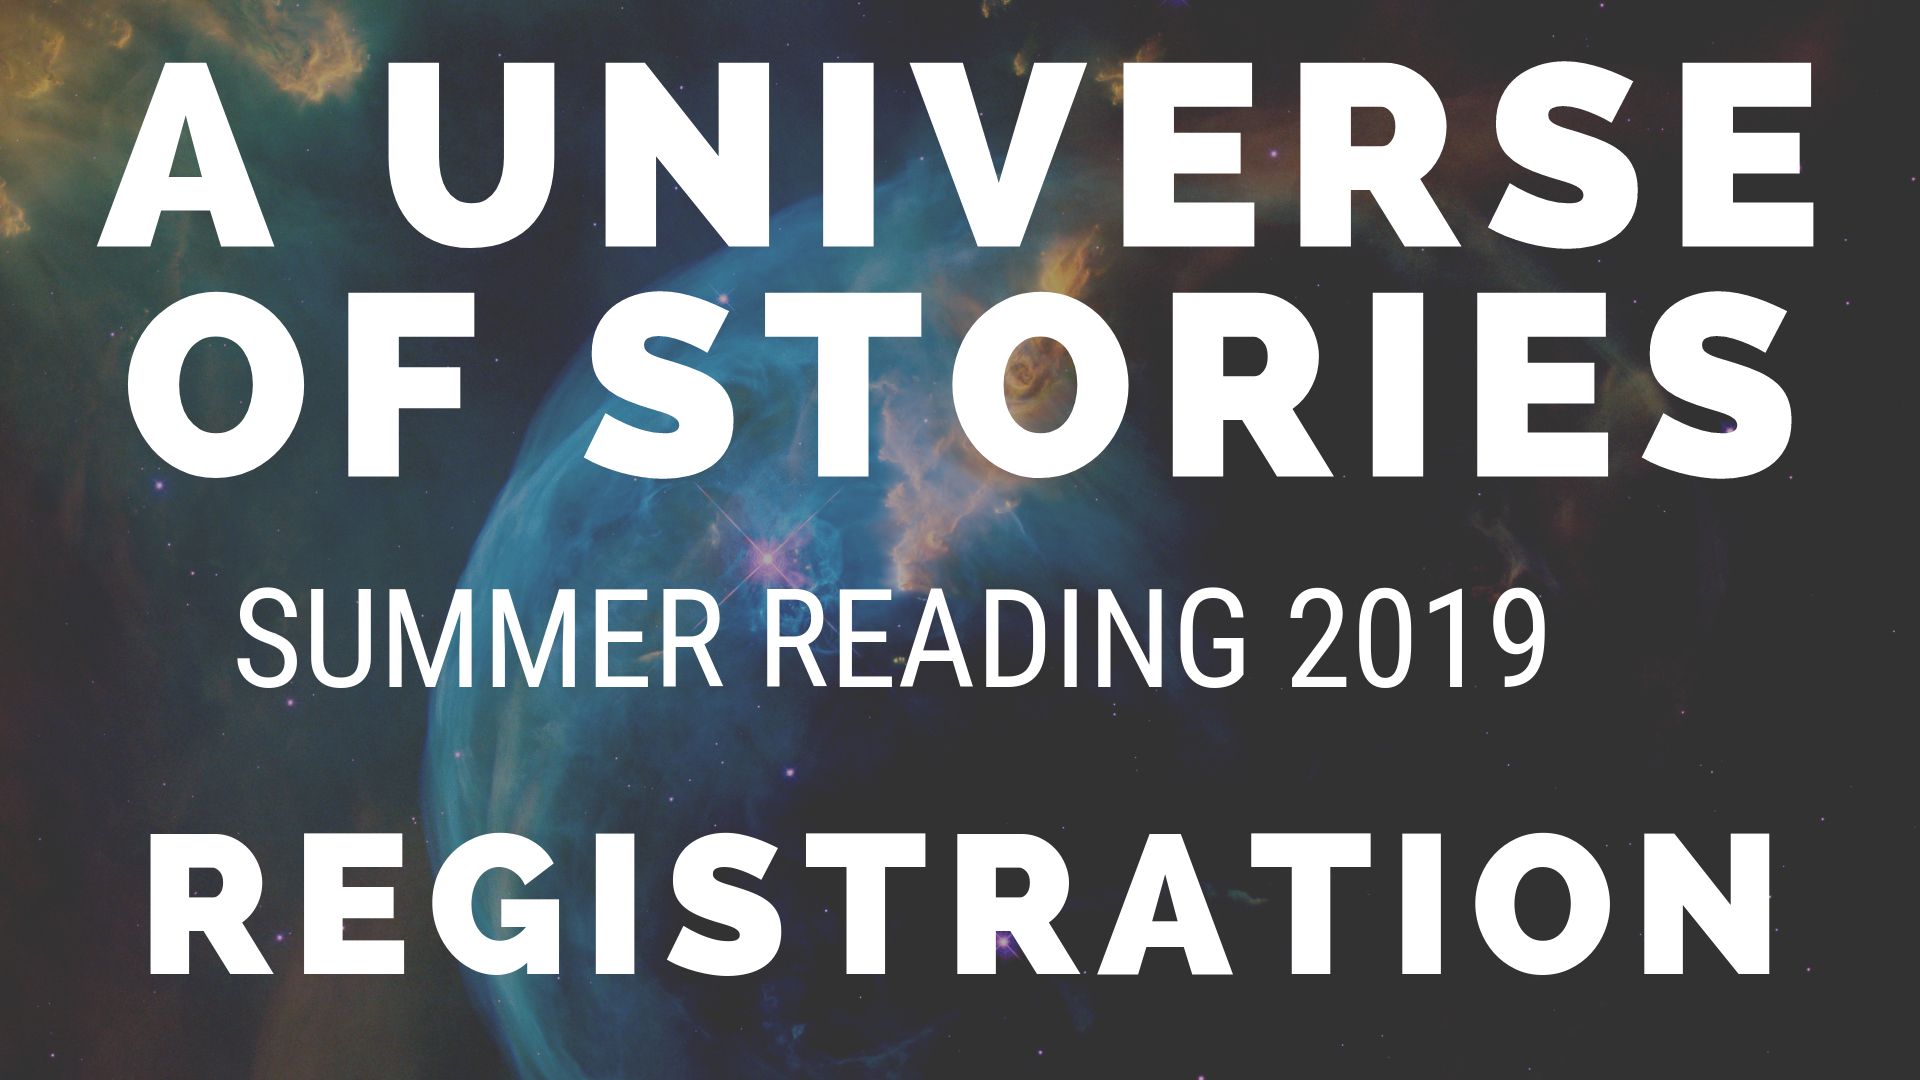 Summer Reading 2019 Registration